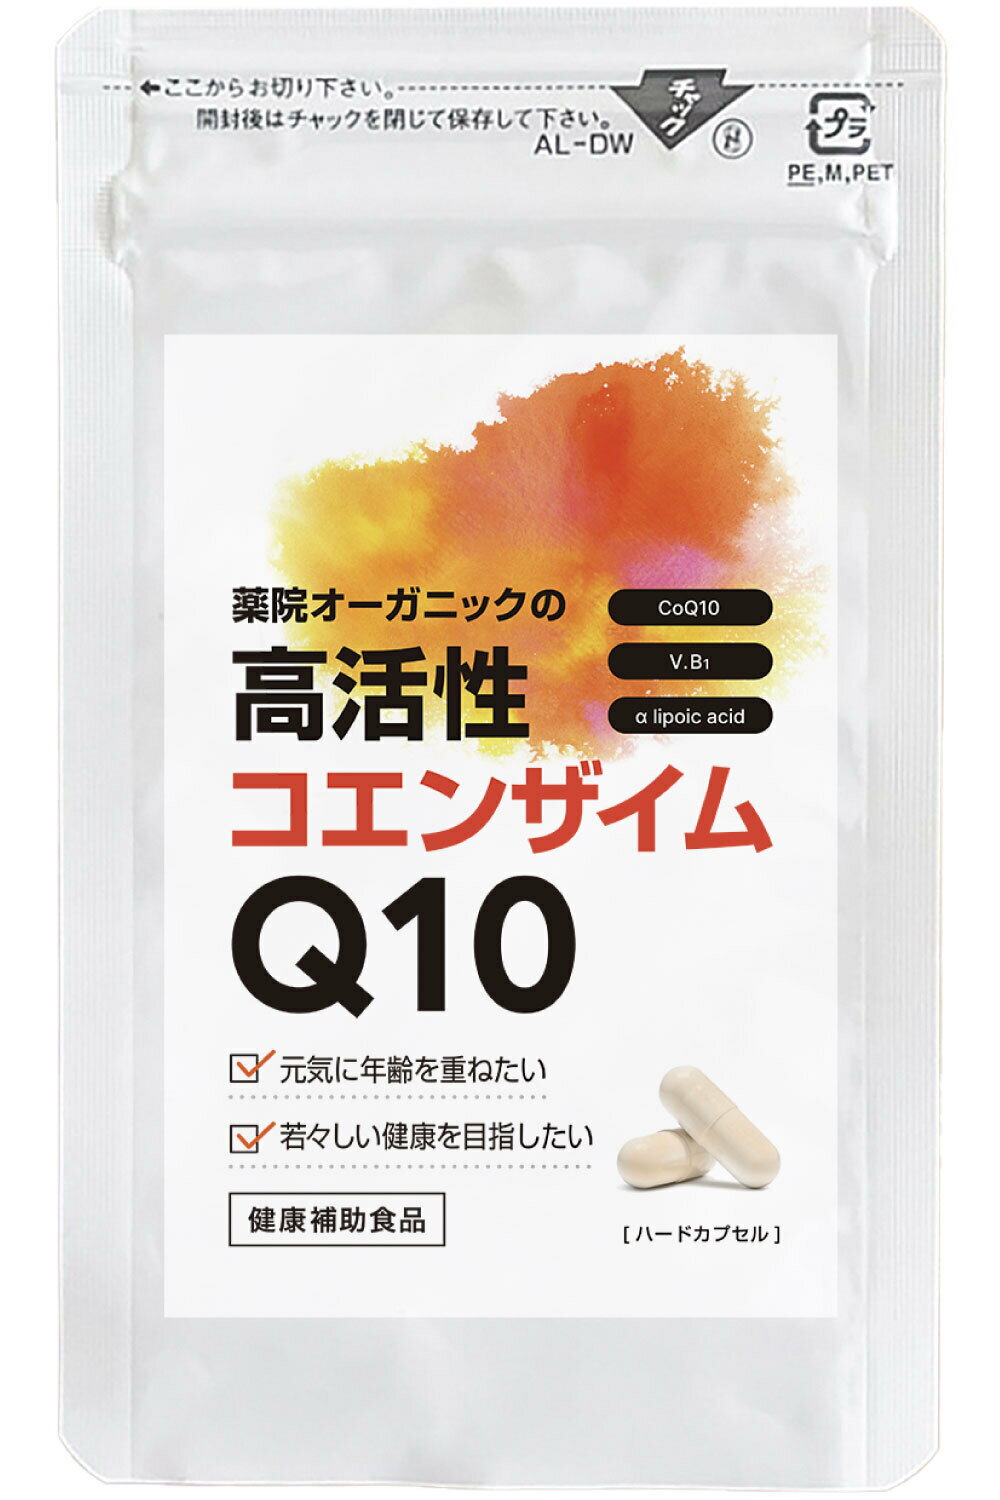 【公式】薬院オーガニックの高活性コエンザイムQ10